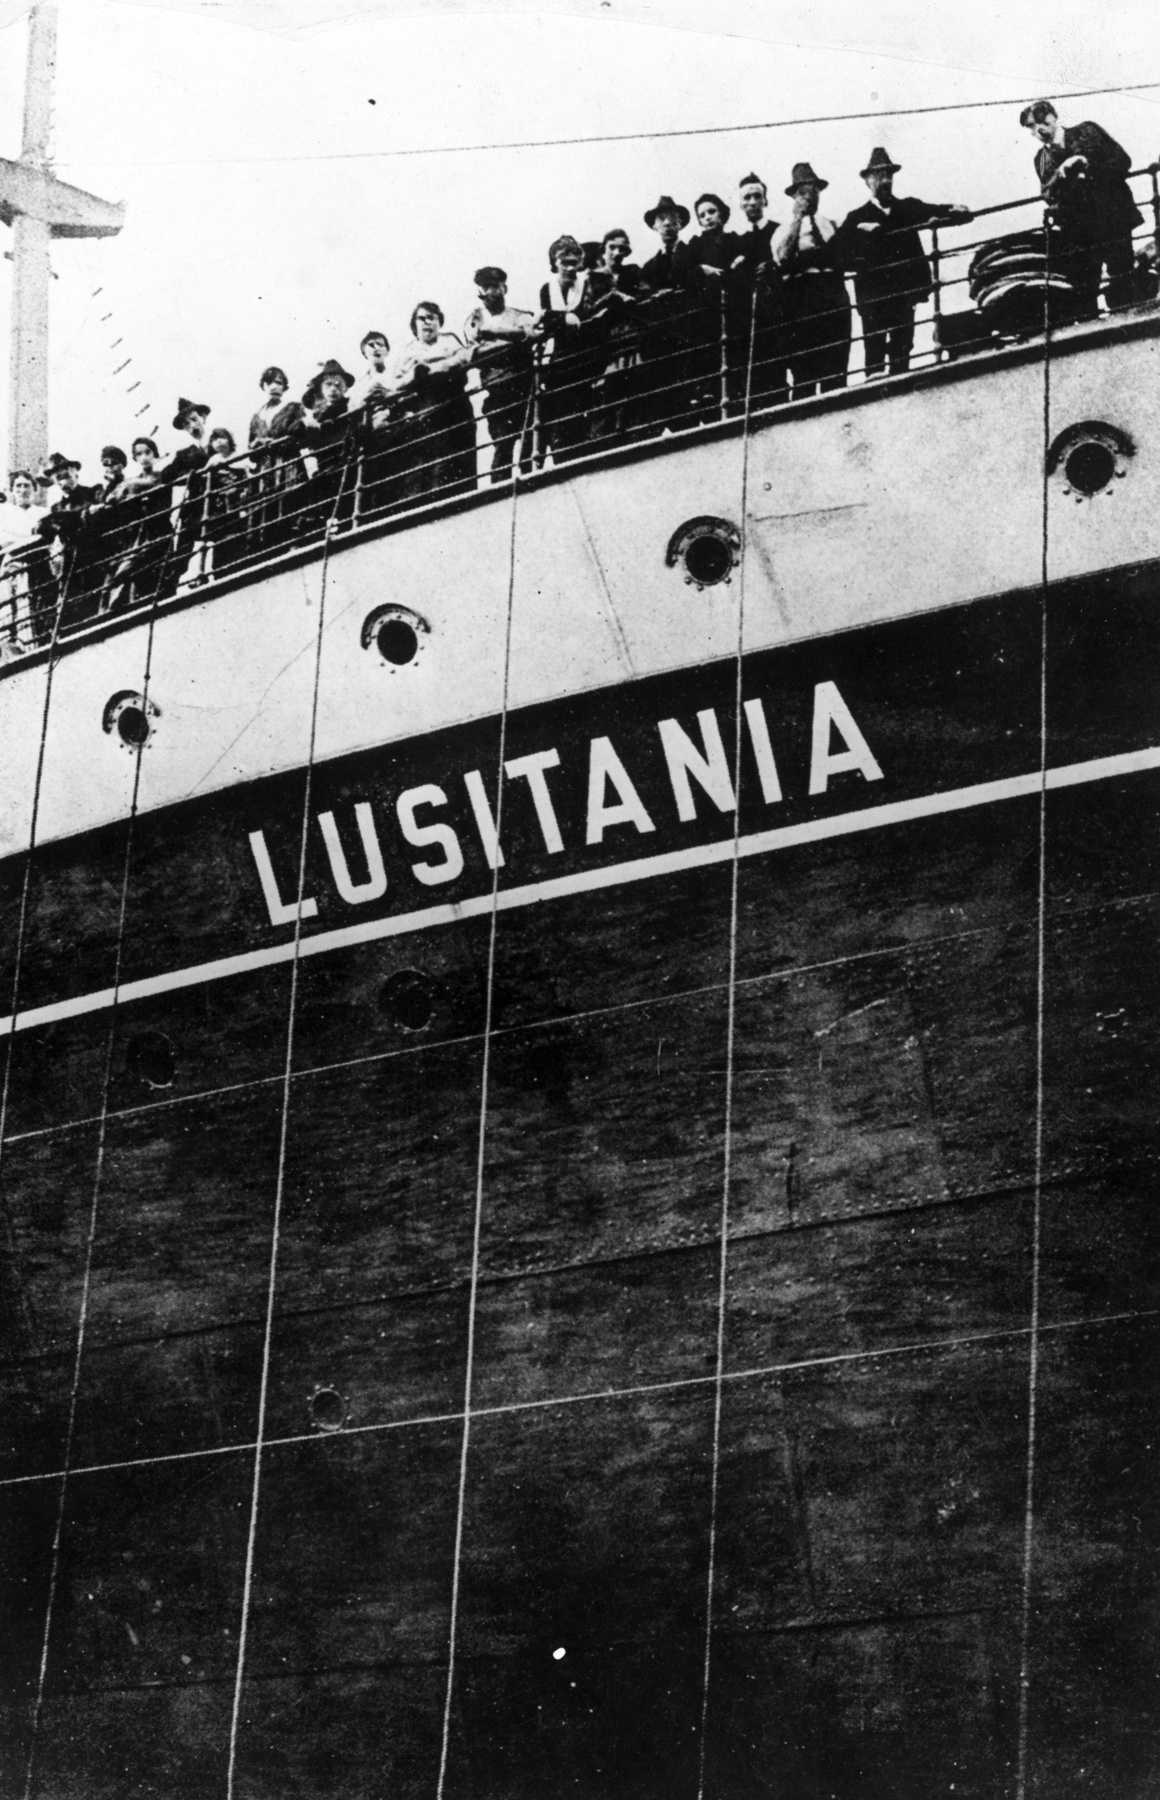 Statiszták sorakoznak a díszleten a Lusitania elsüllyesztéséről készült némafilm forgatásán.